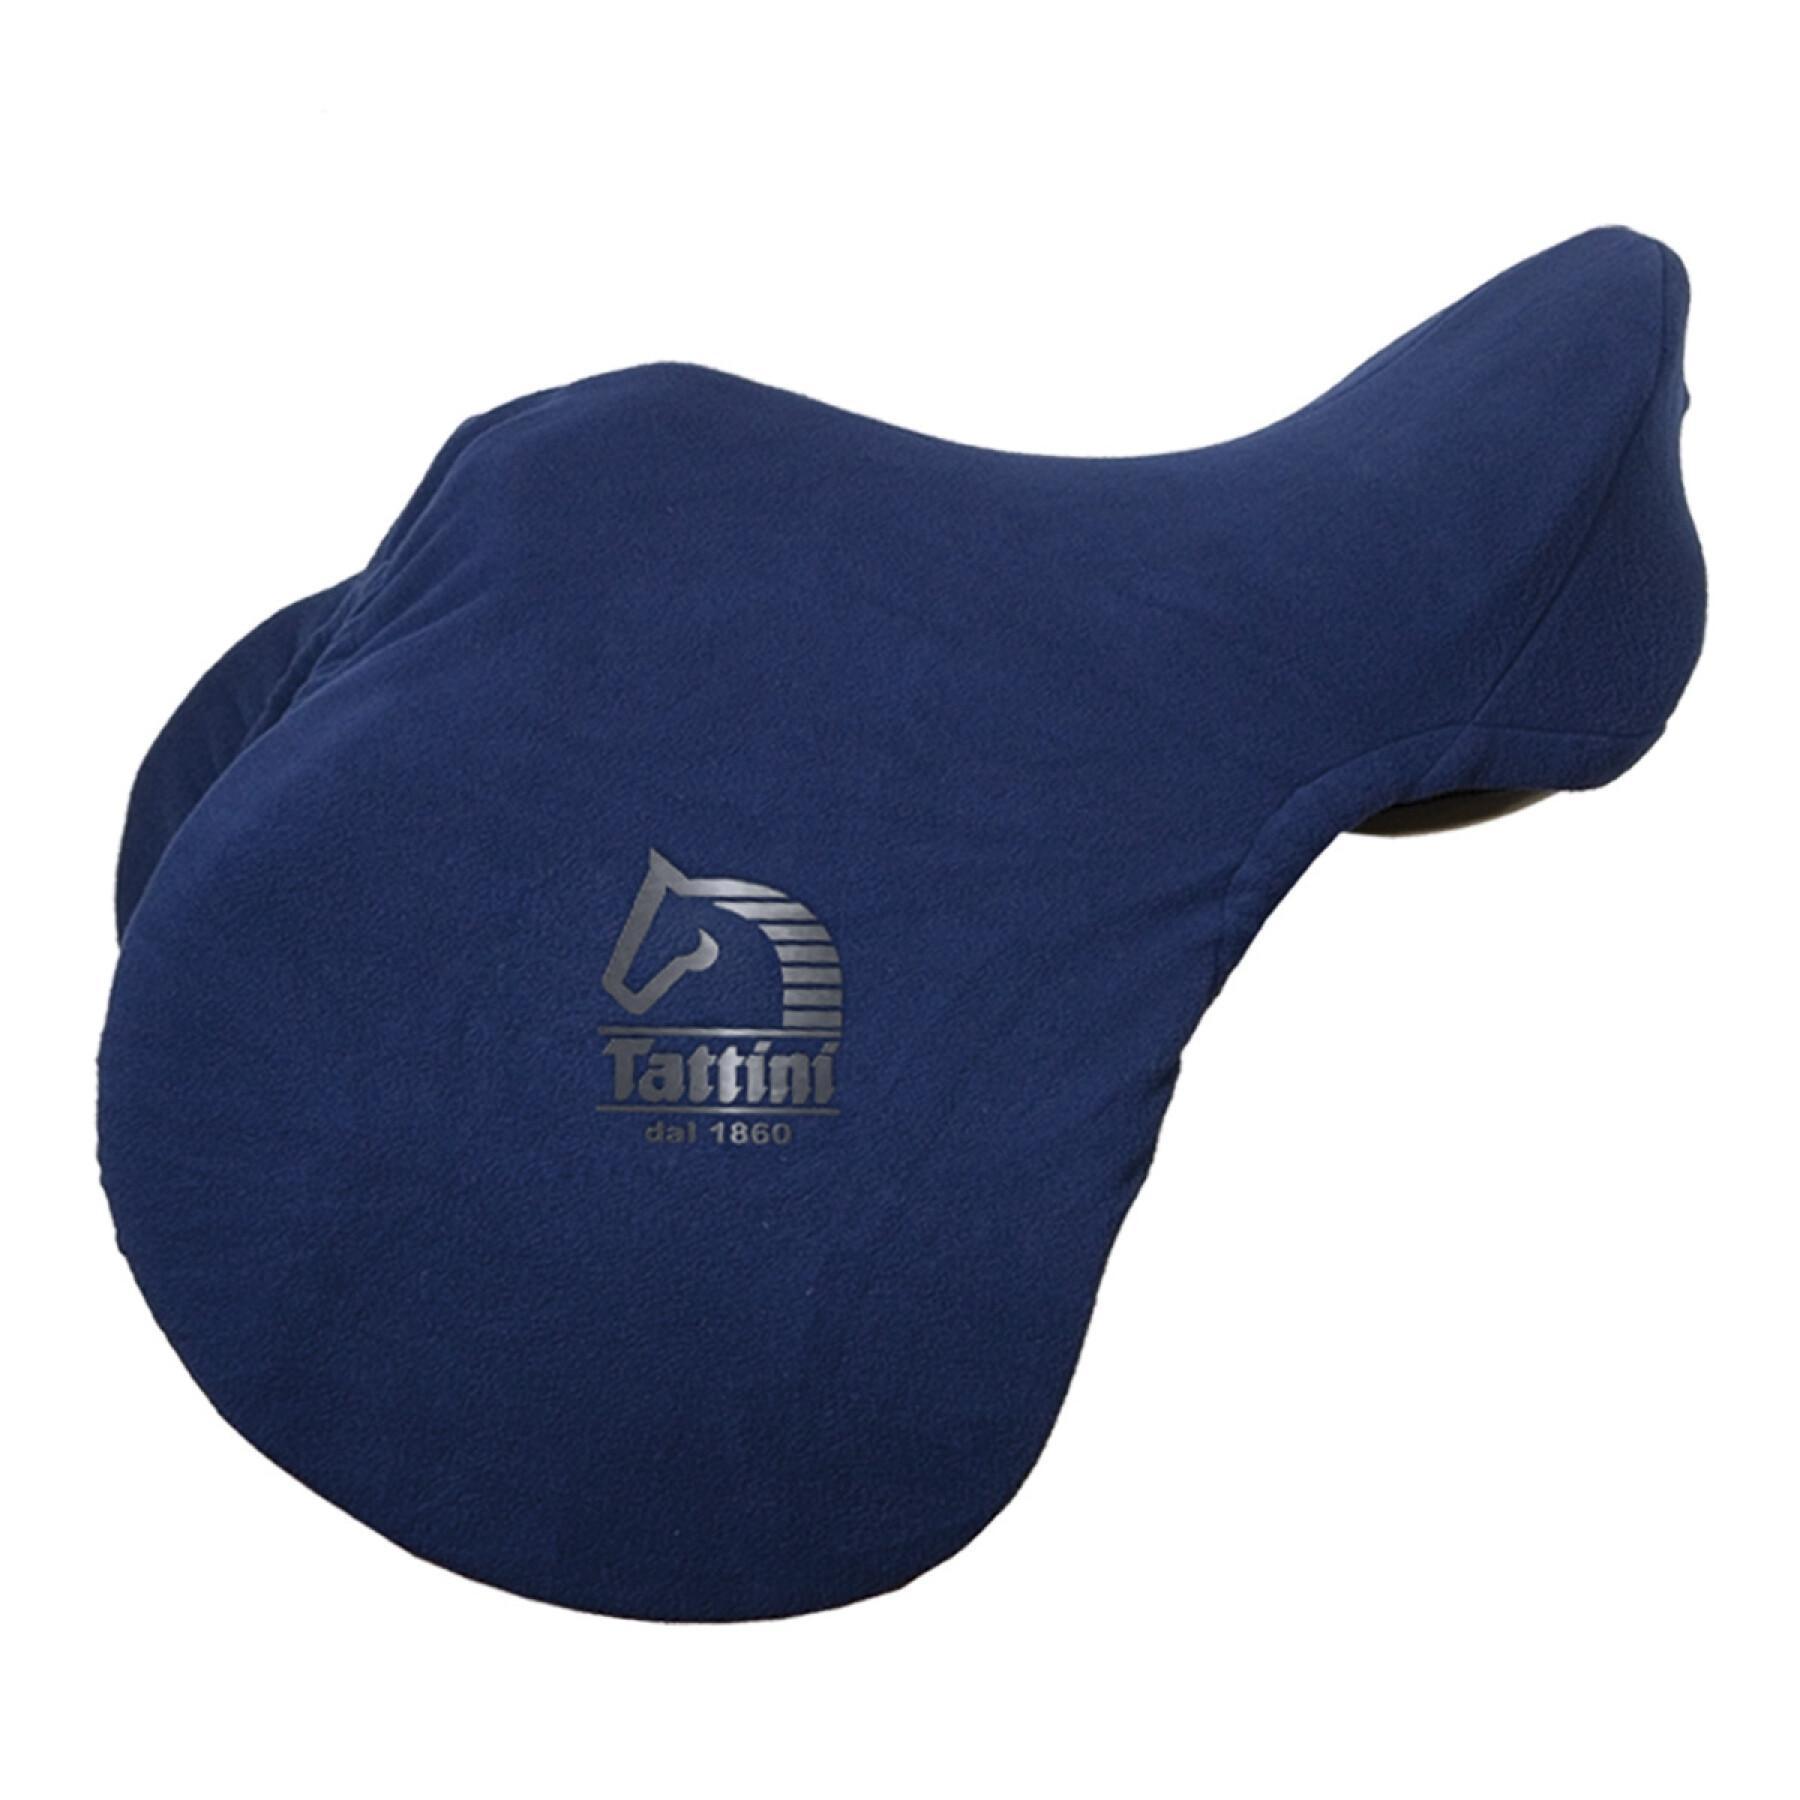 Saddle blanket for horse Tattini